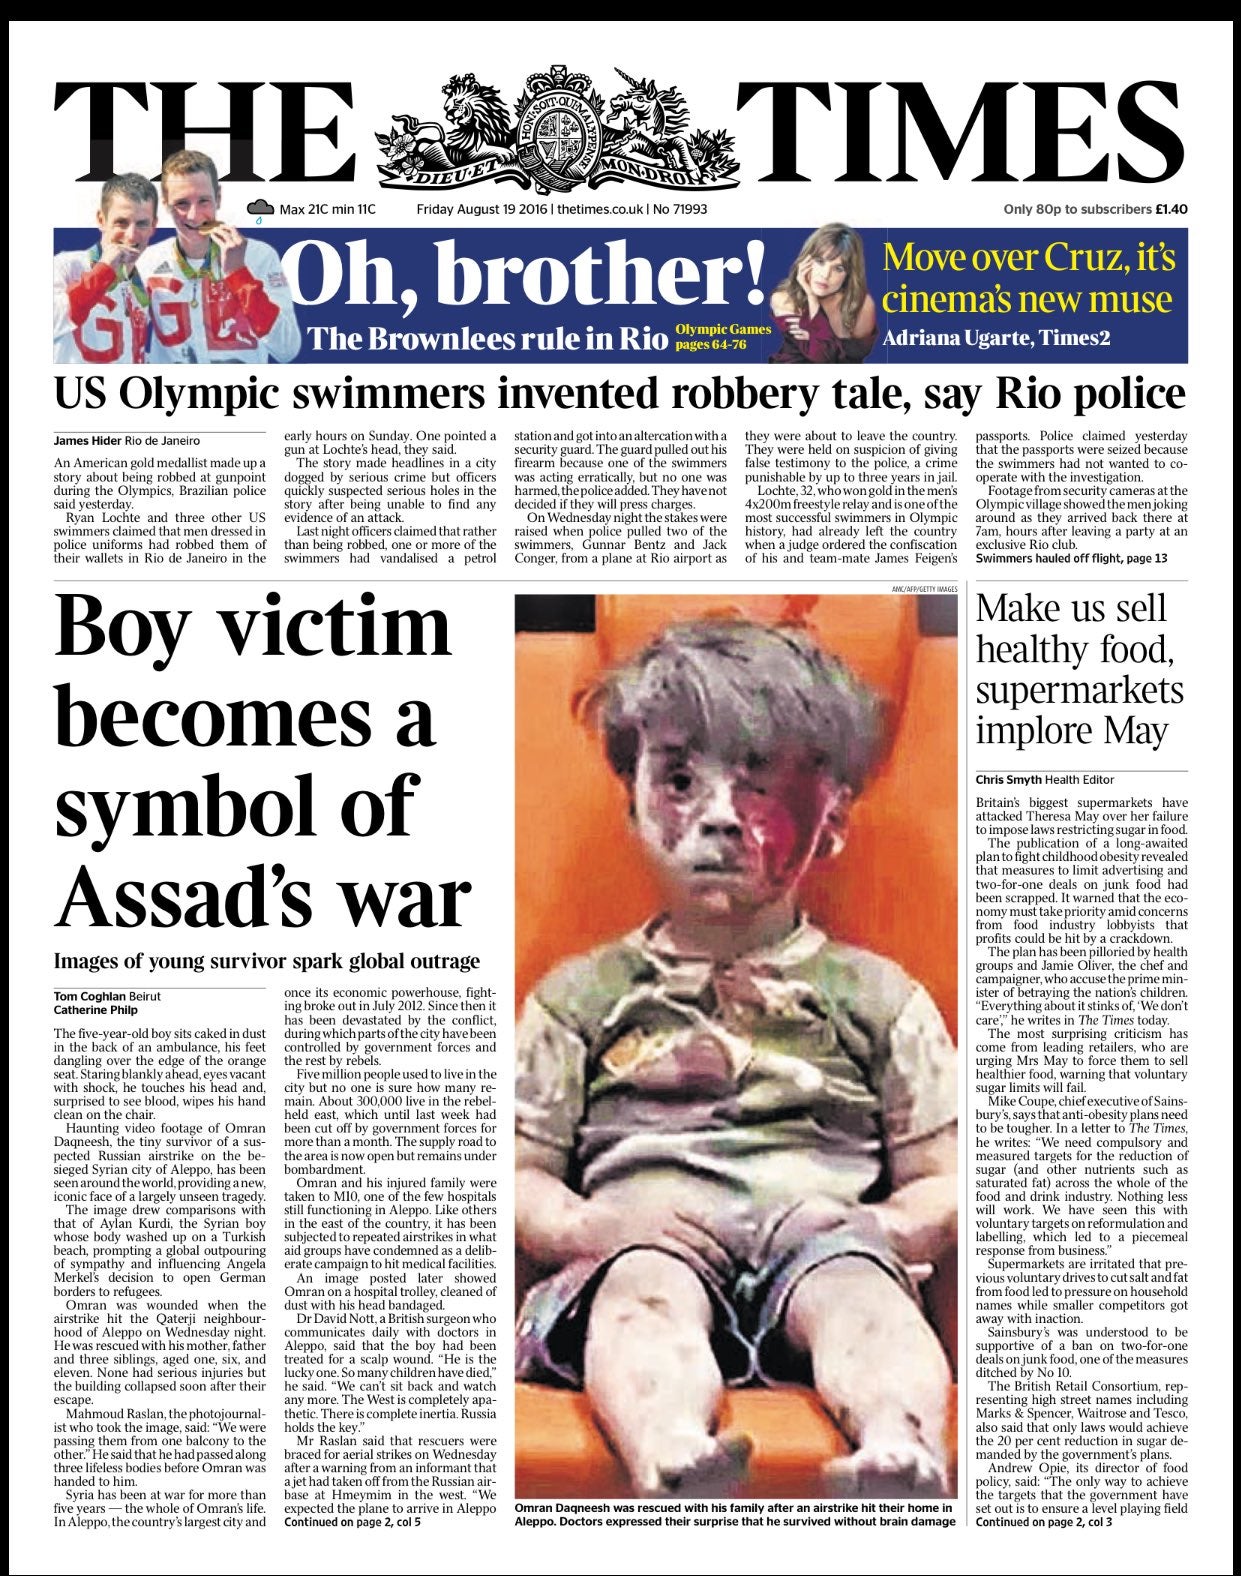 Syrian boy Ambulance - The Times